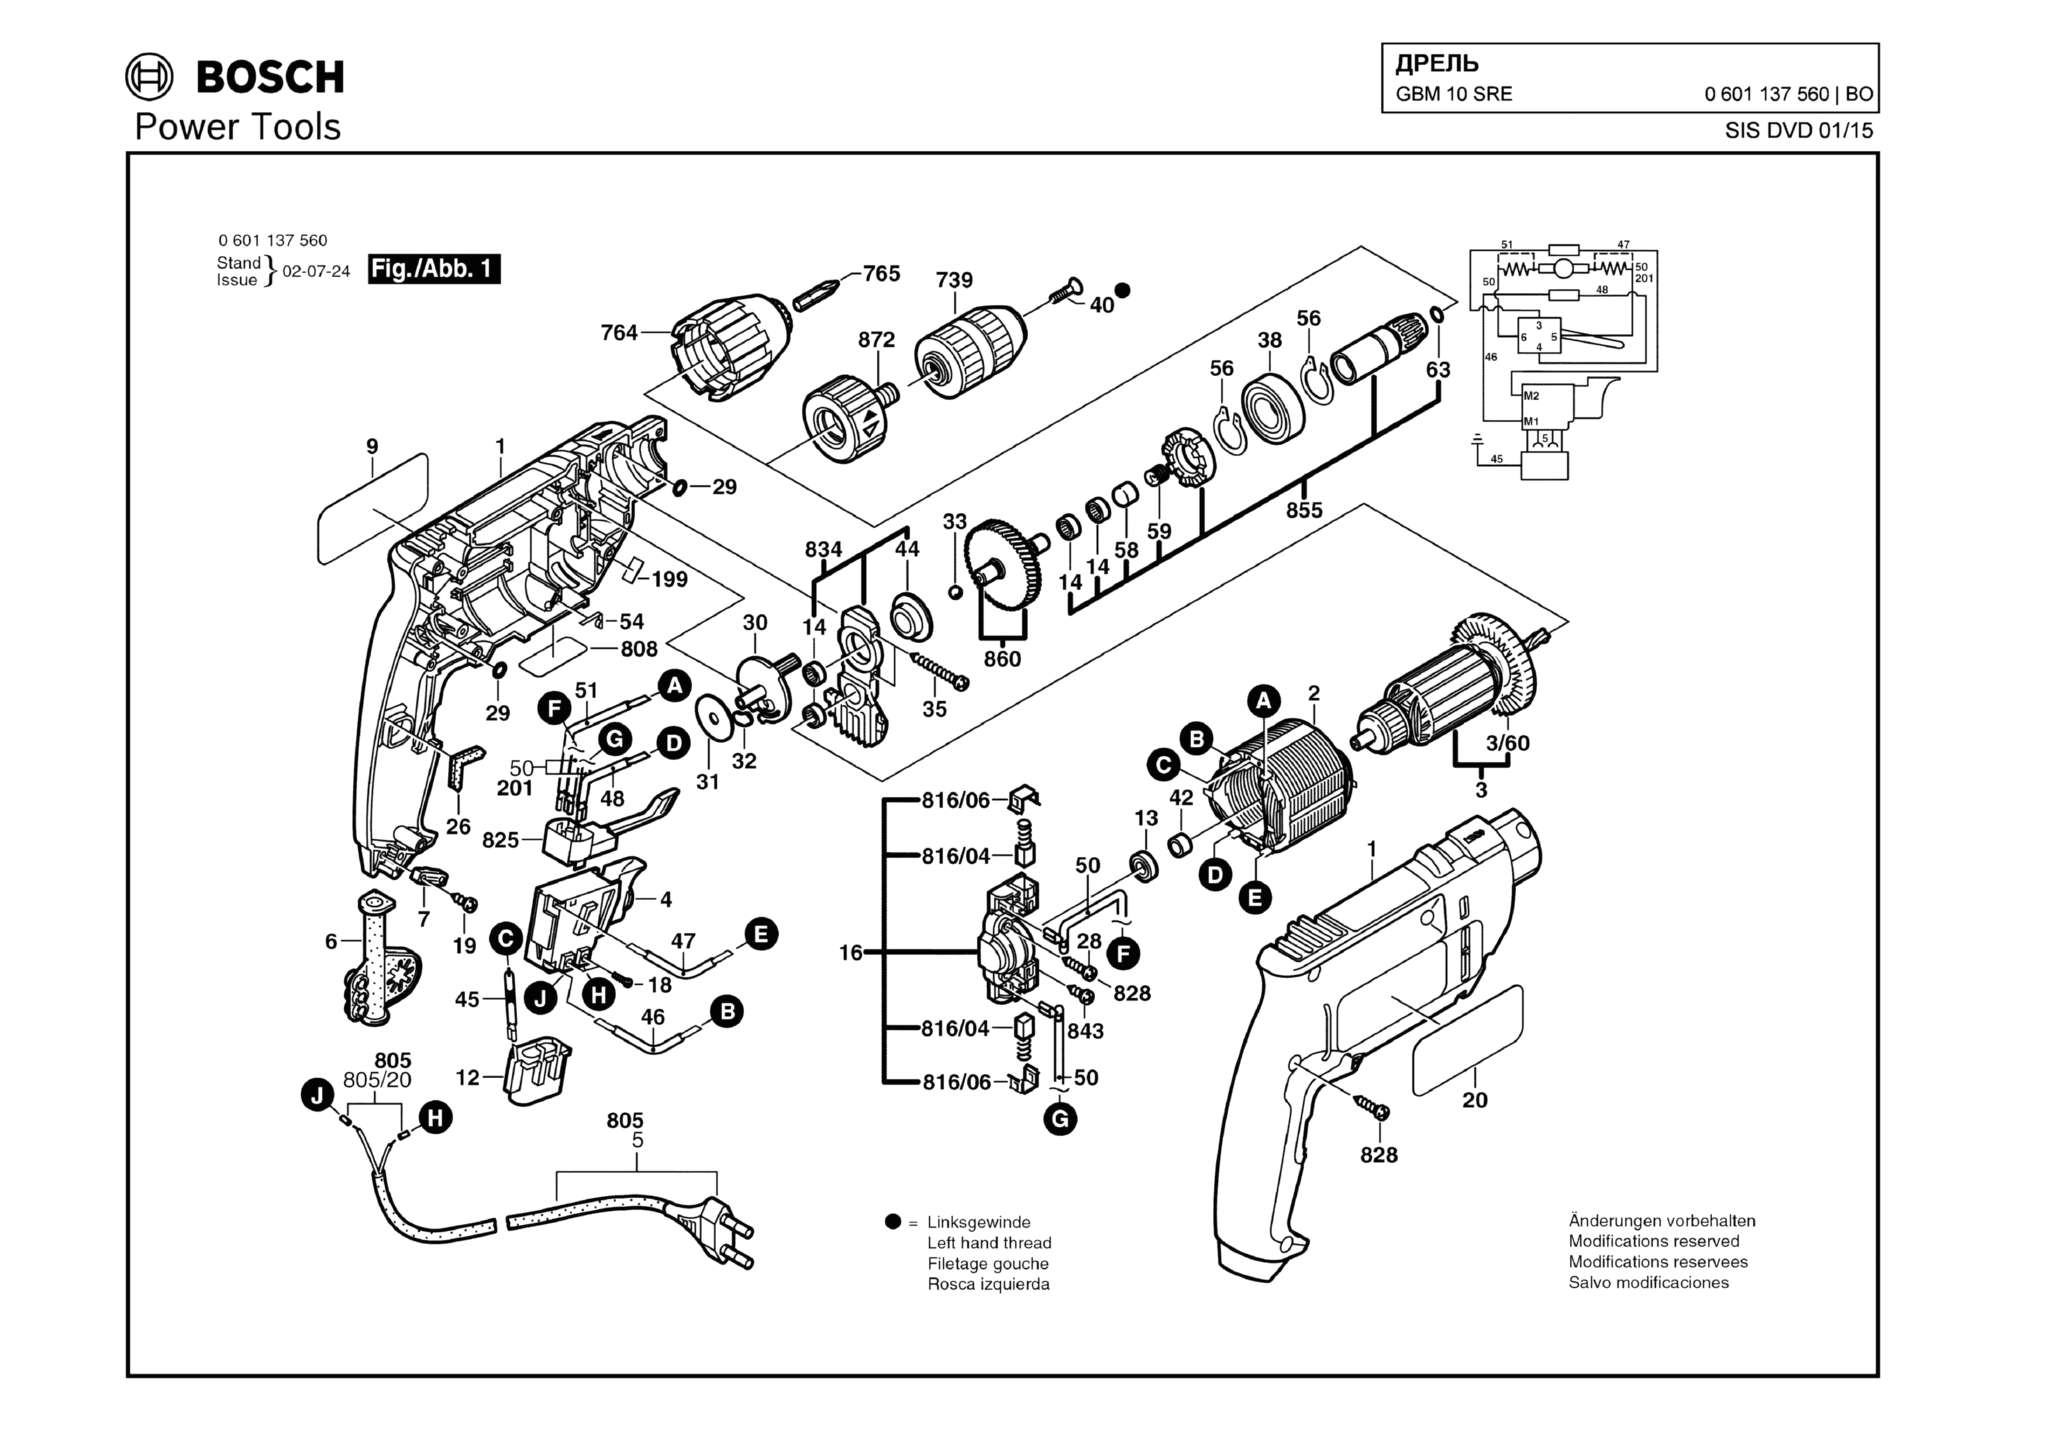 Запчасти, схема и деталировка Bosch GBM 10 SRE (ТИП 0601137560)